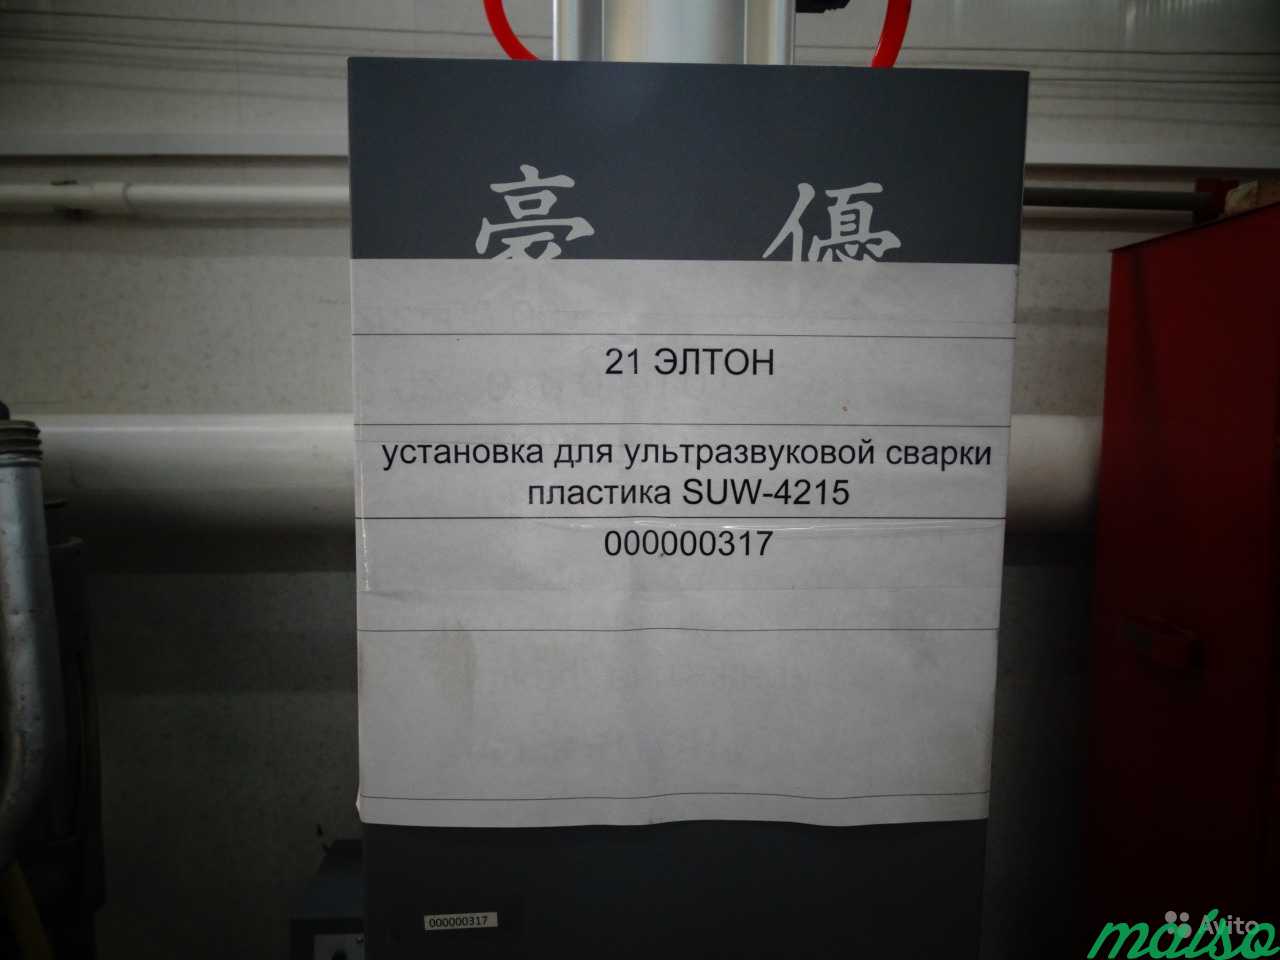 Установка для ультразвуковой сварки suw-4215 в Москве. Фото 1